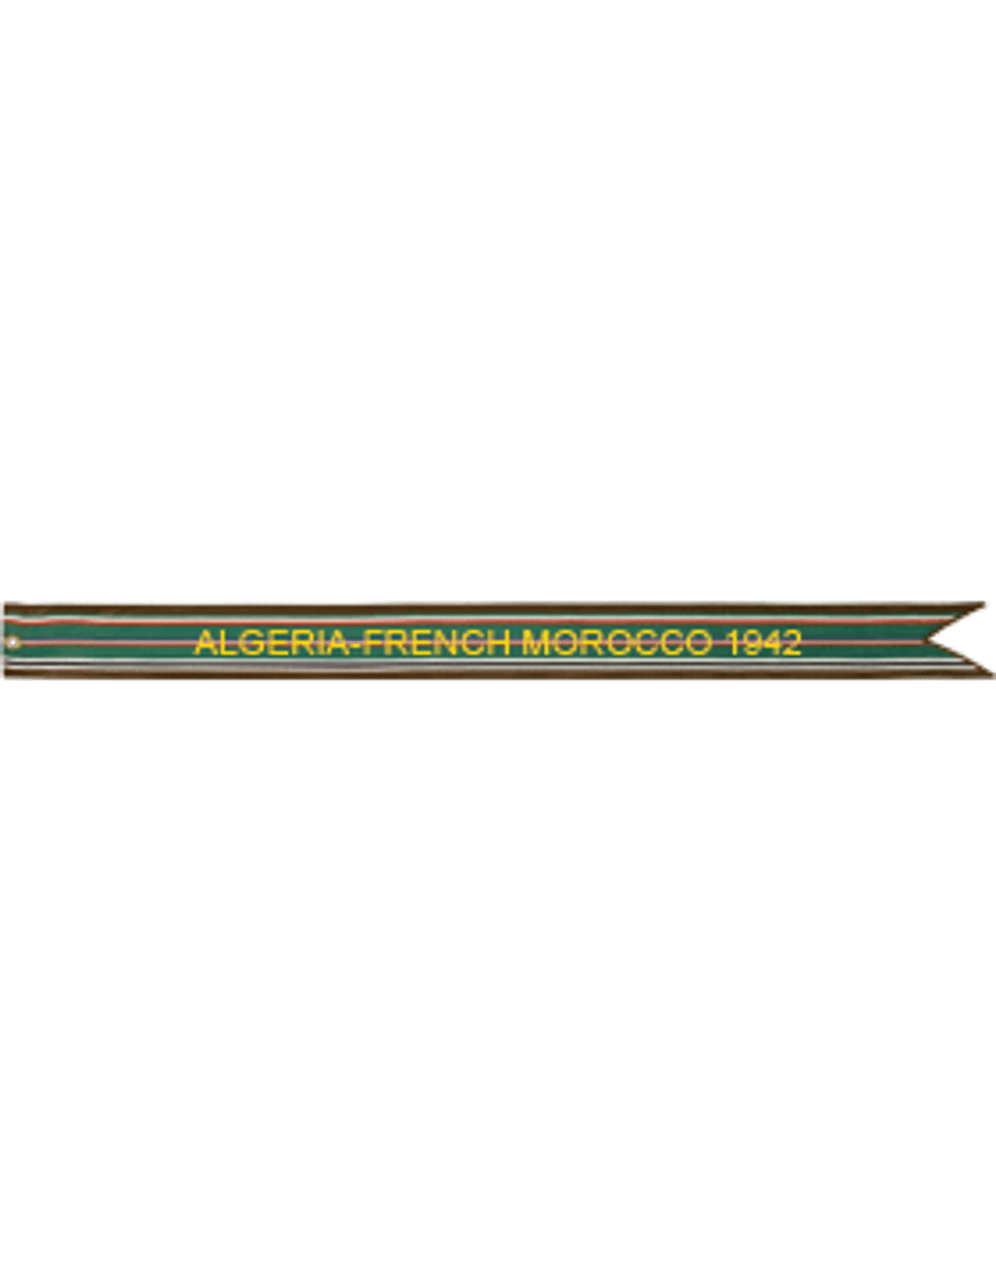 US Air Force Battle Streamer World War II, European-AfricanMiddle Eastern Campaign ALGERIA-FRENCH MOROCCO 1942